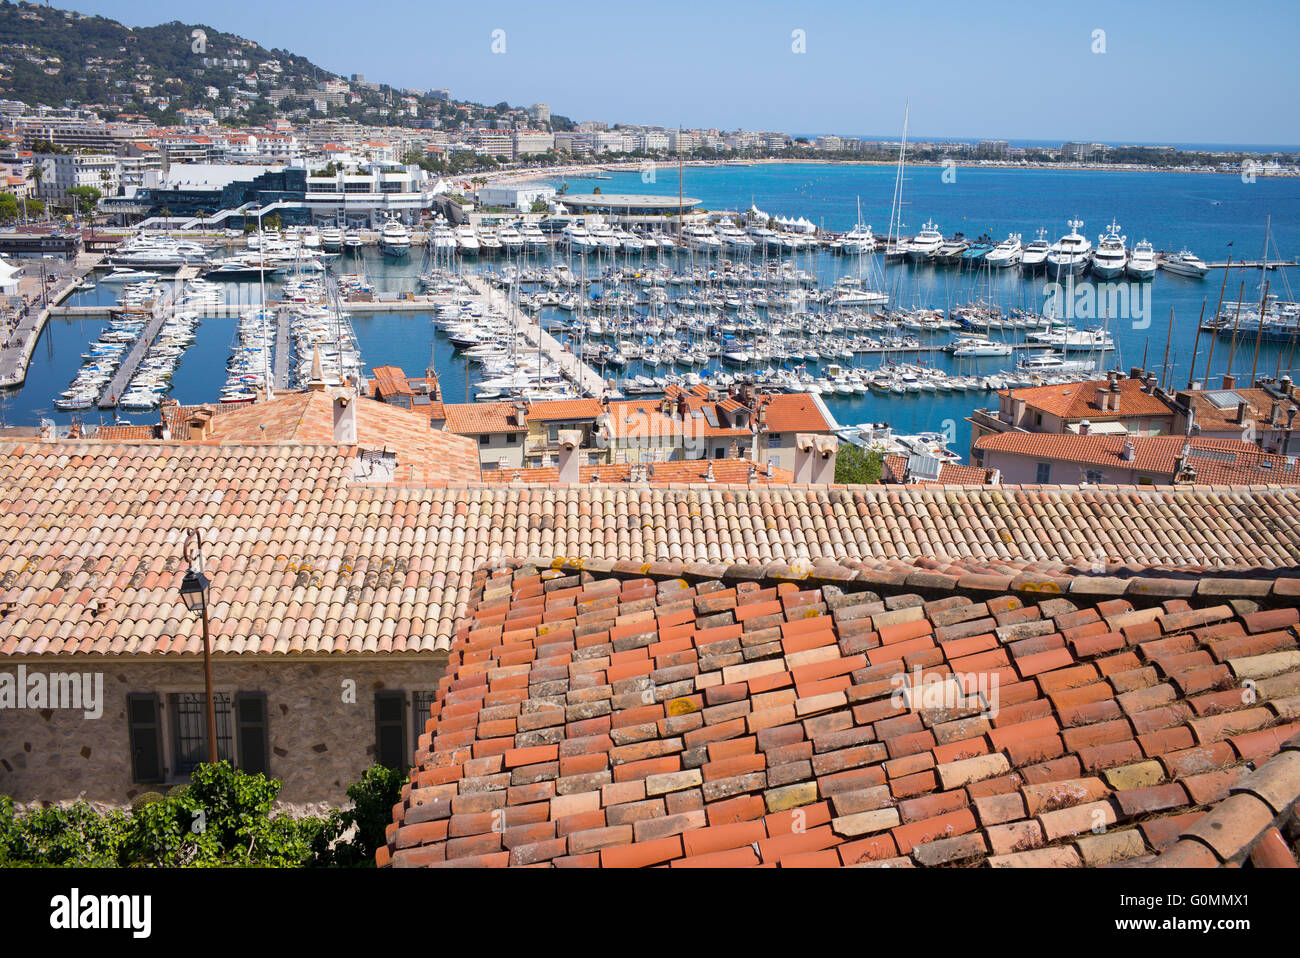 Le port de Cannes, France vu de la vieille ville du Suquet Banque D'Images